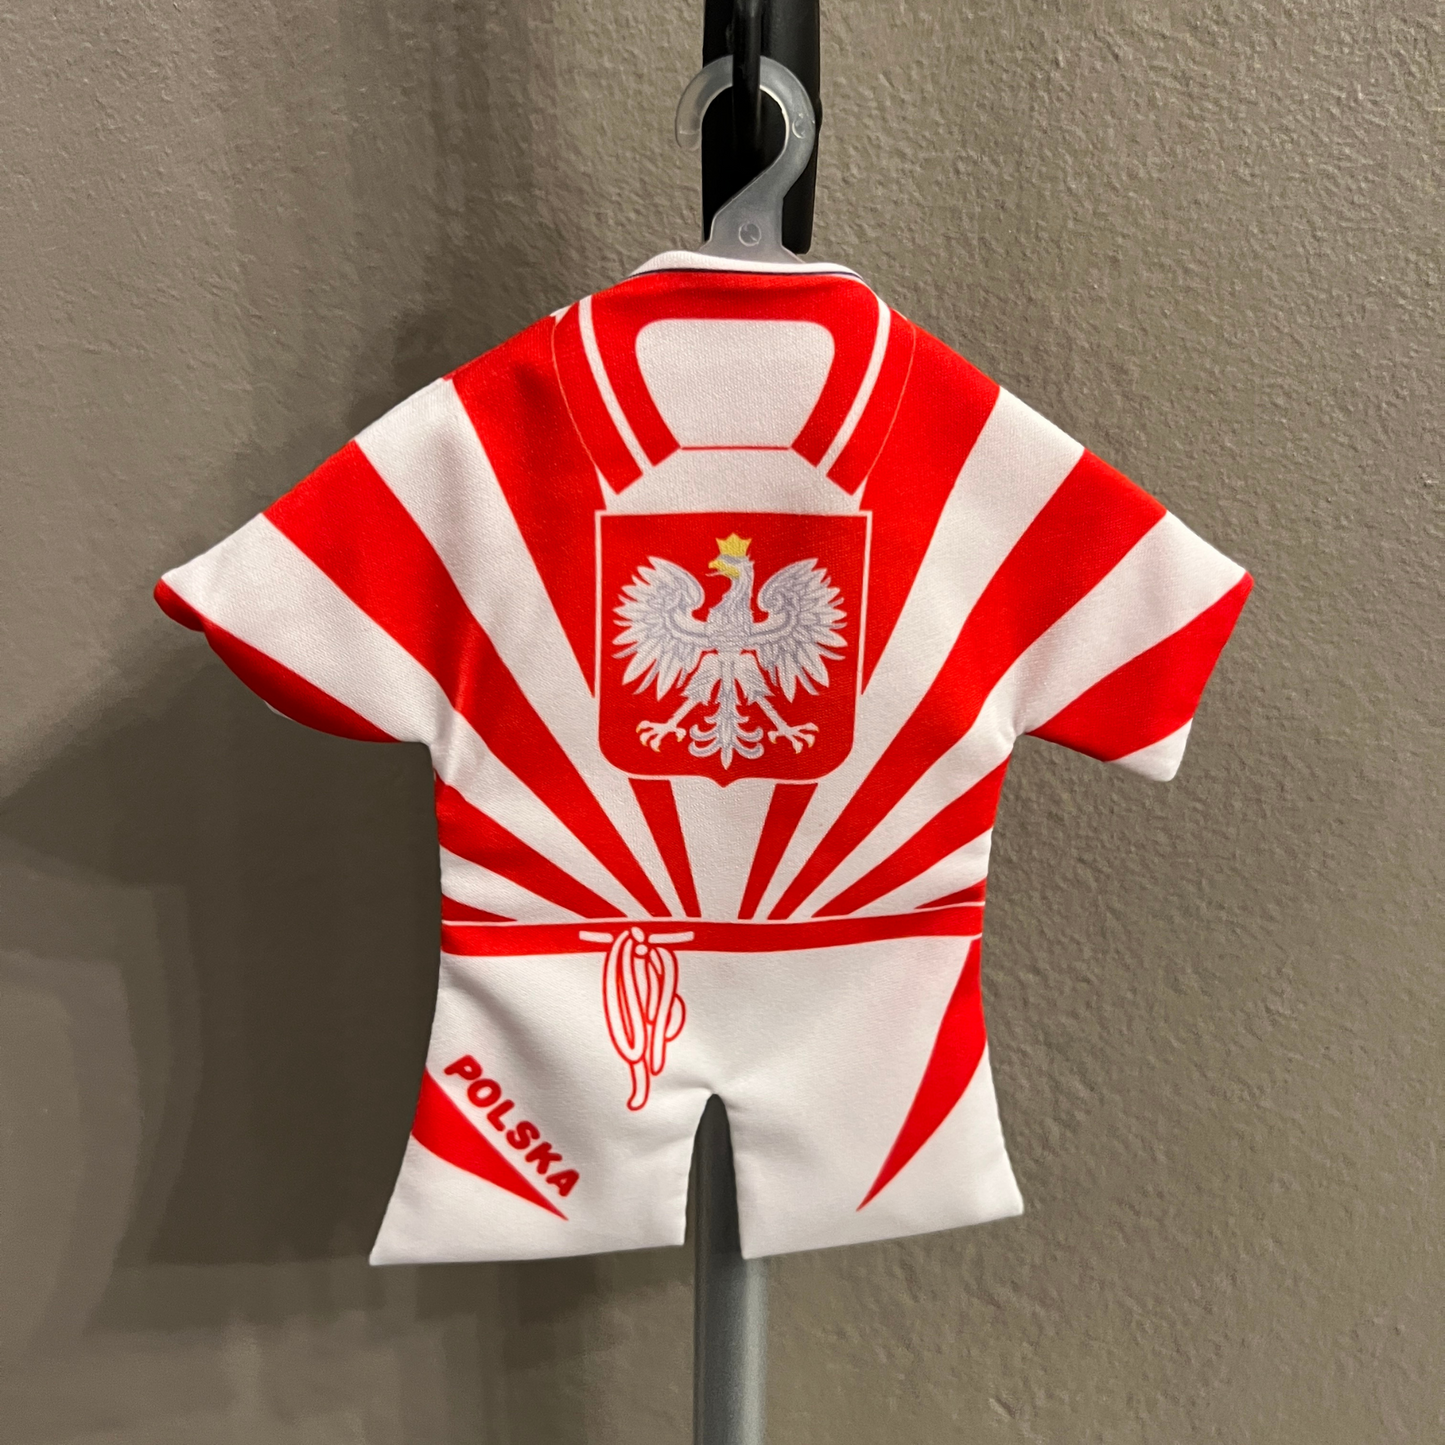 Décoration voiture tee shirt Polska - Trésors de Pologne